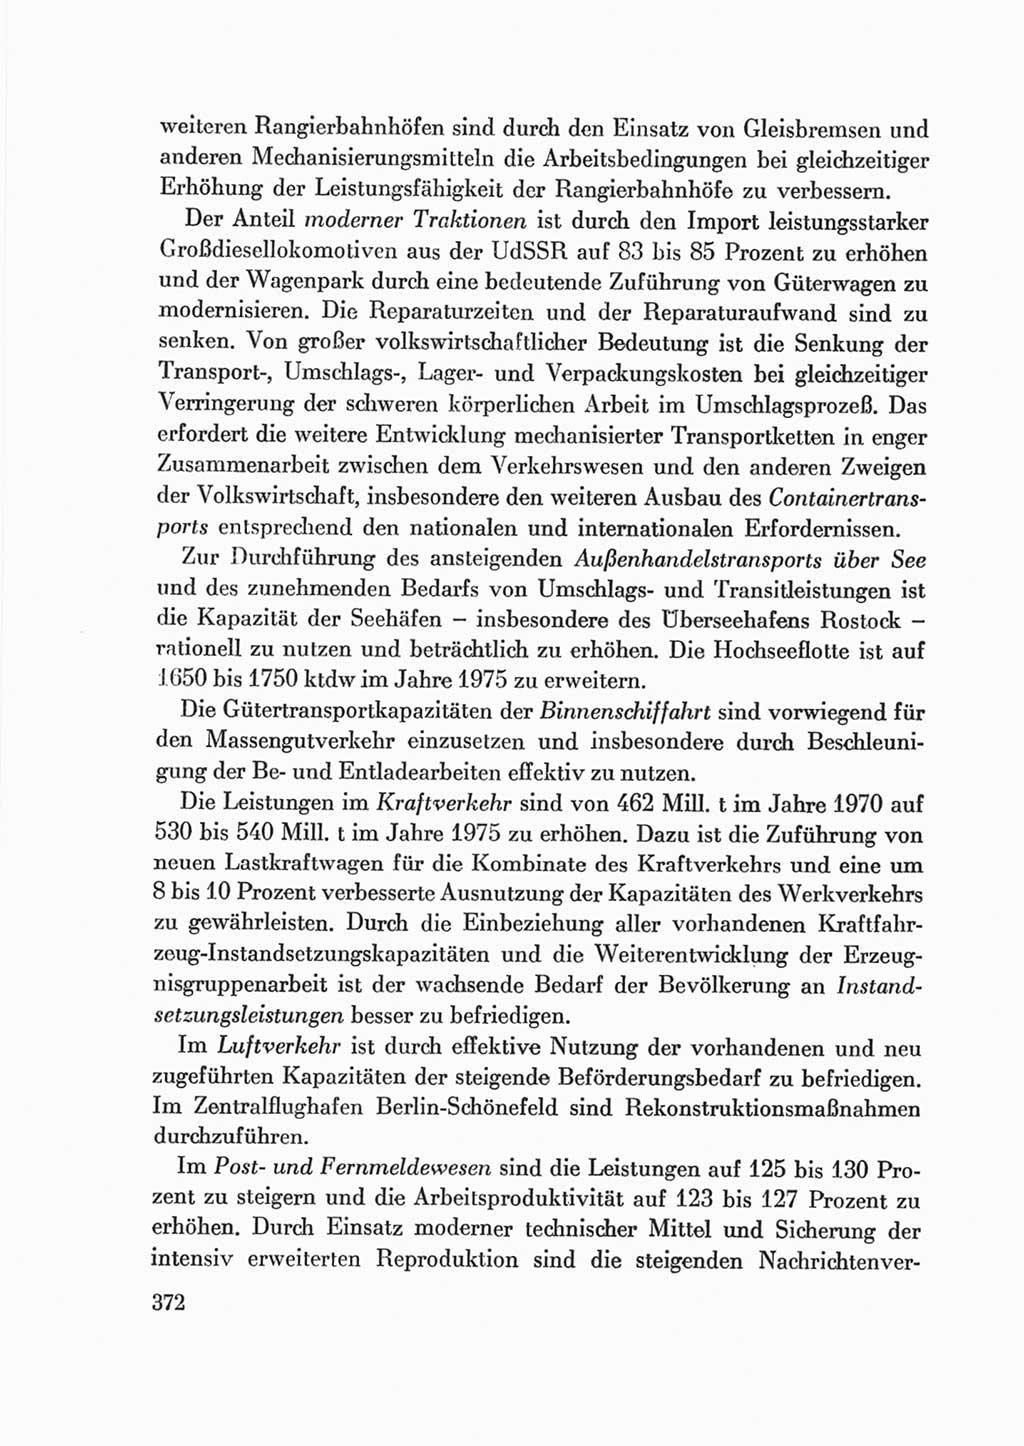 Protokoll der Verhandlungen des Ⅷ. Parteitages der Sozialistischen Einheitspartei Deutschlands (SED) [Deutsche Demokratische Republik (DDR)] 1971, Band 2, Seite 372 (Prot. Verh. Ⅷ. PT SED DDR 1971, Bd. 2, S. 372)